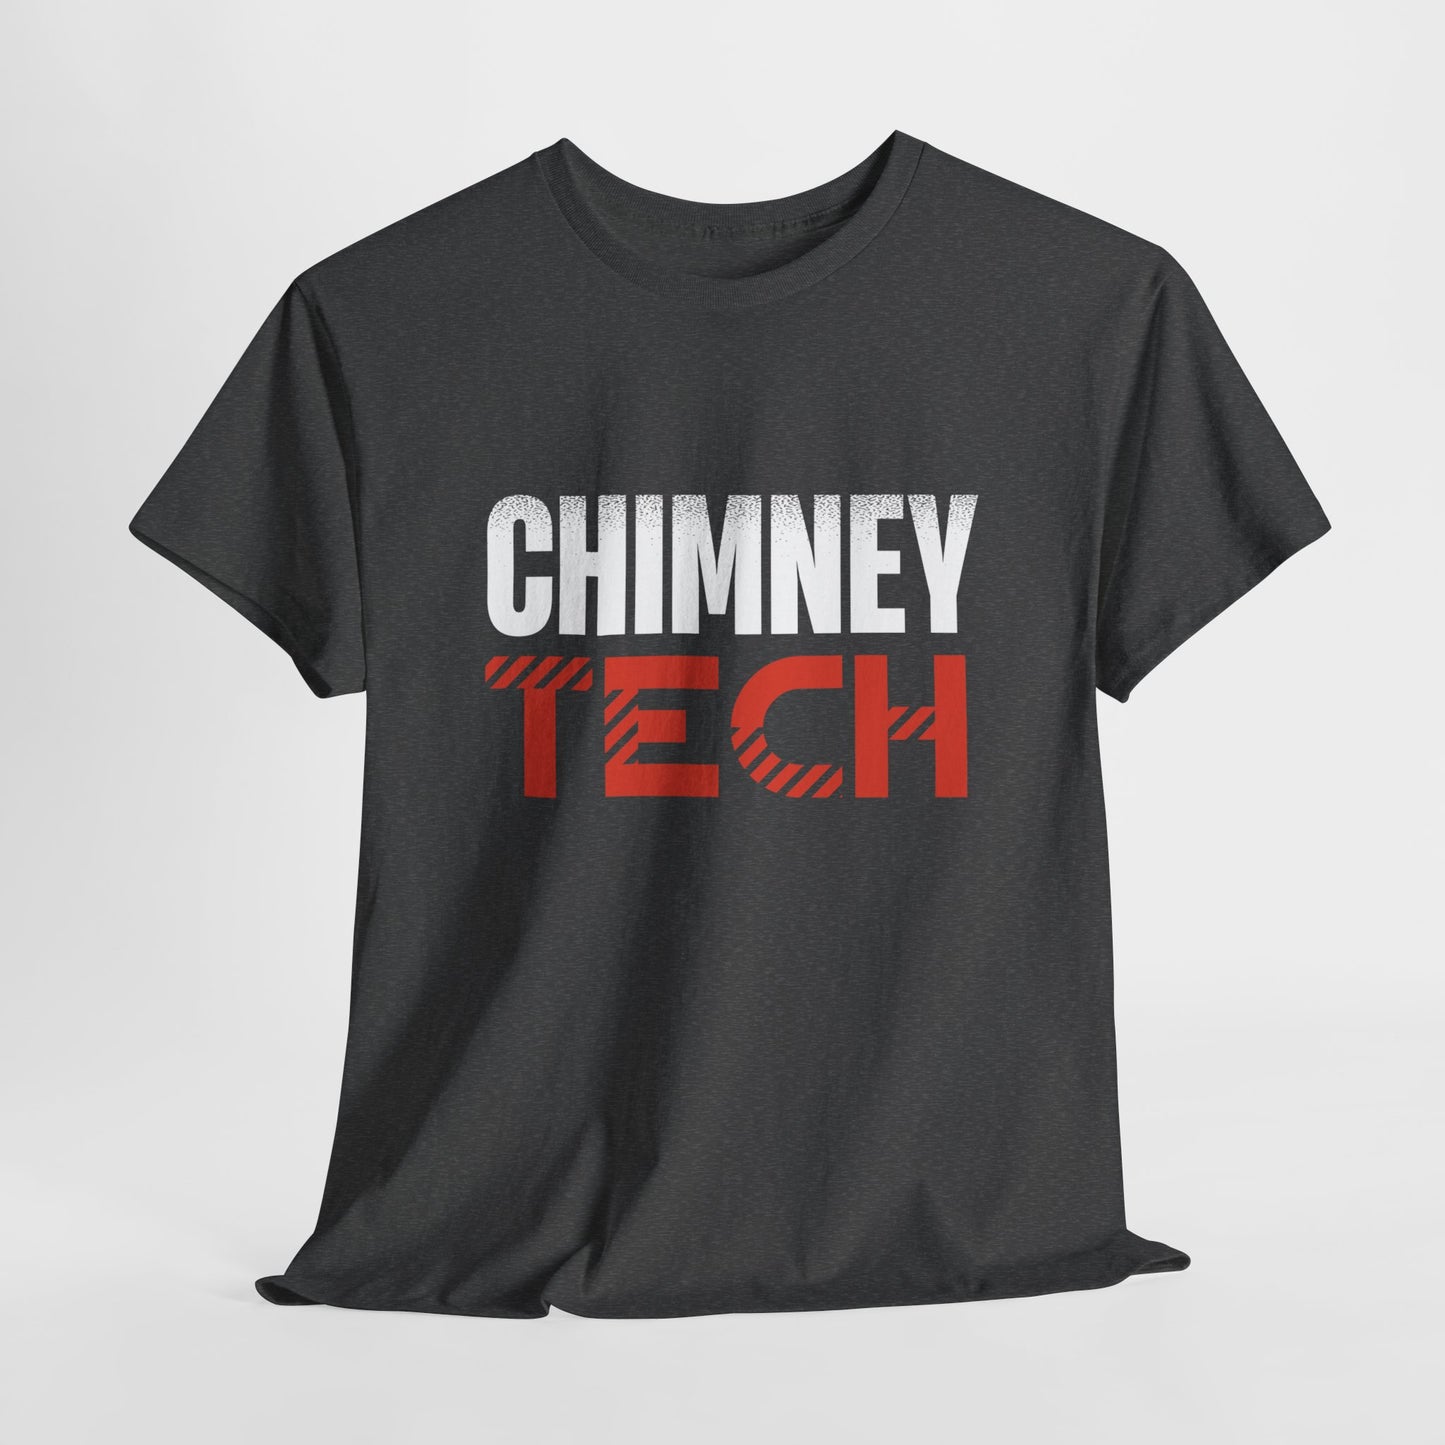 Chimney Tech